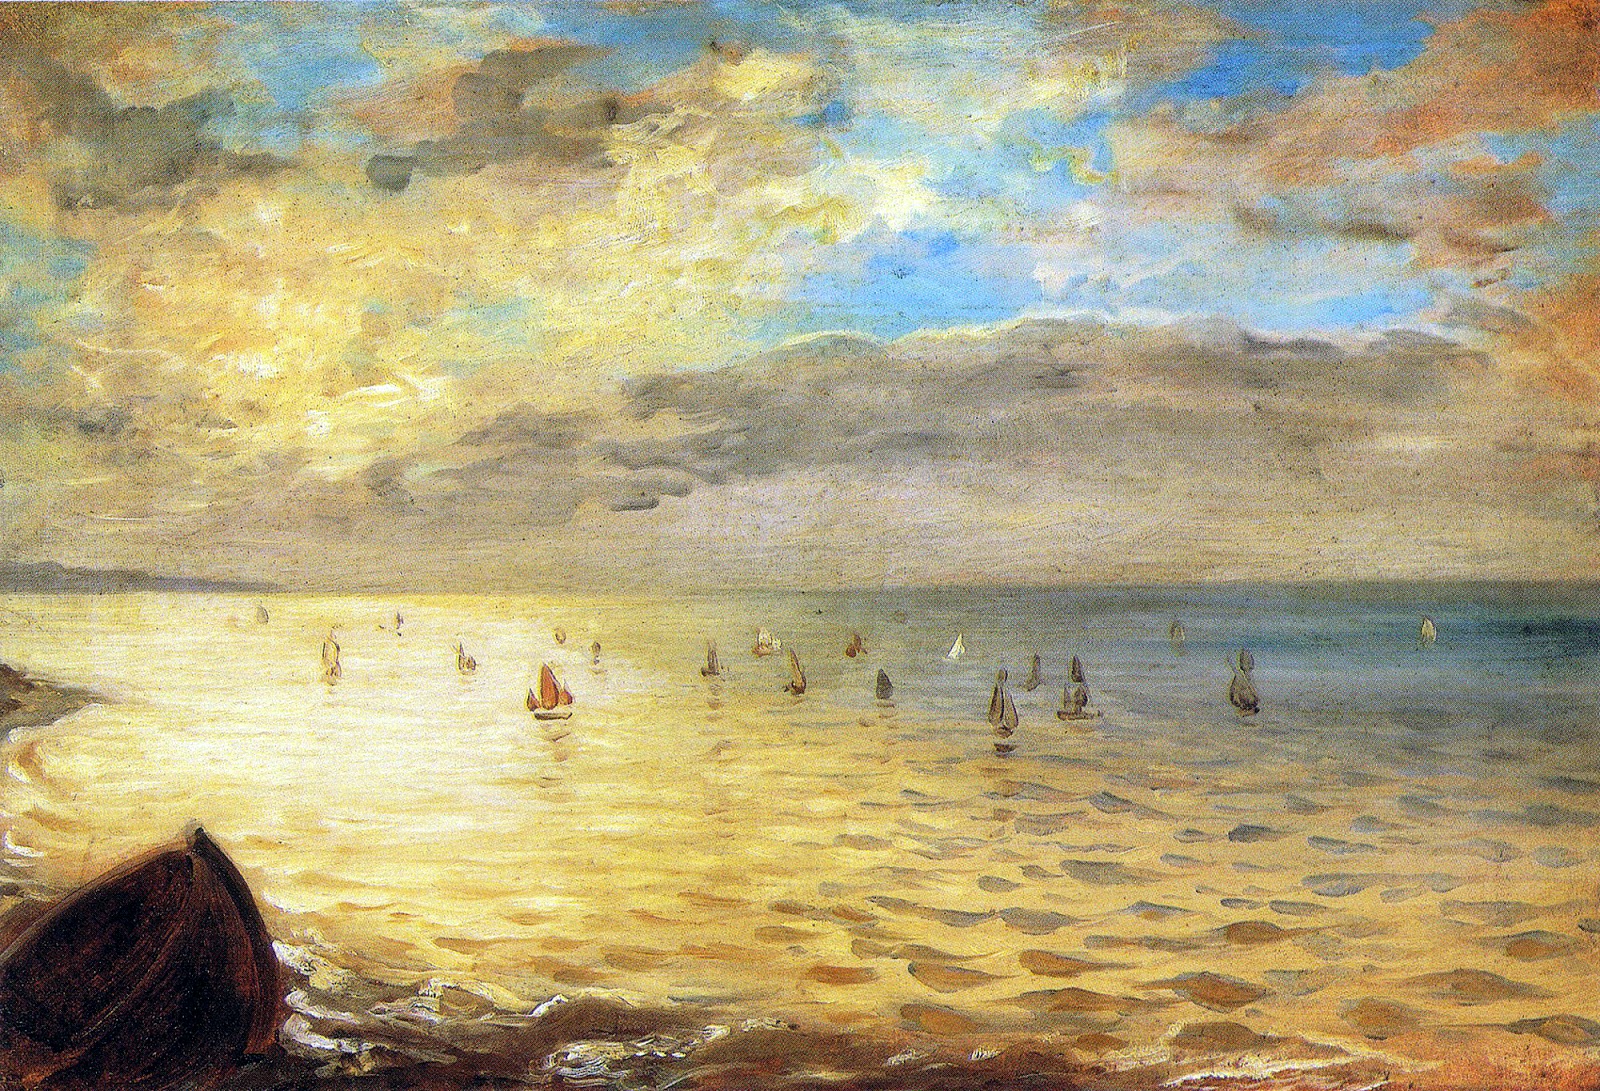 Eugene+Delacroix-1798-1863 (228).jpg